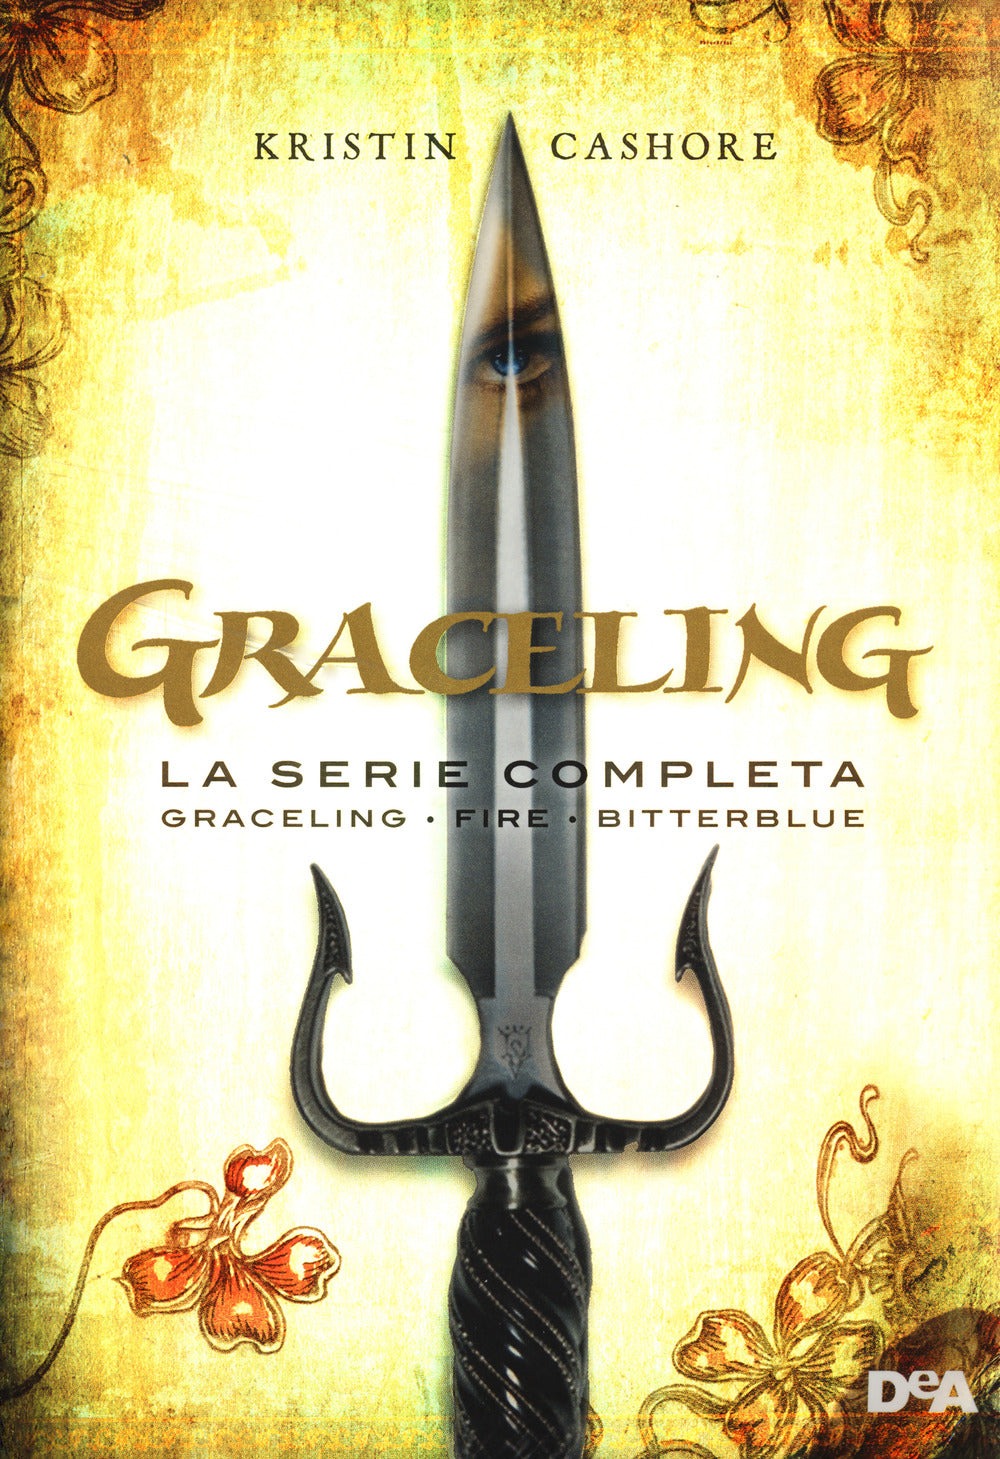 Graceling. La serie completa: Graceling-Fire-Bitterblue.